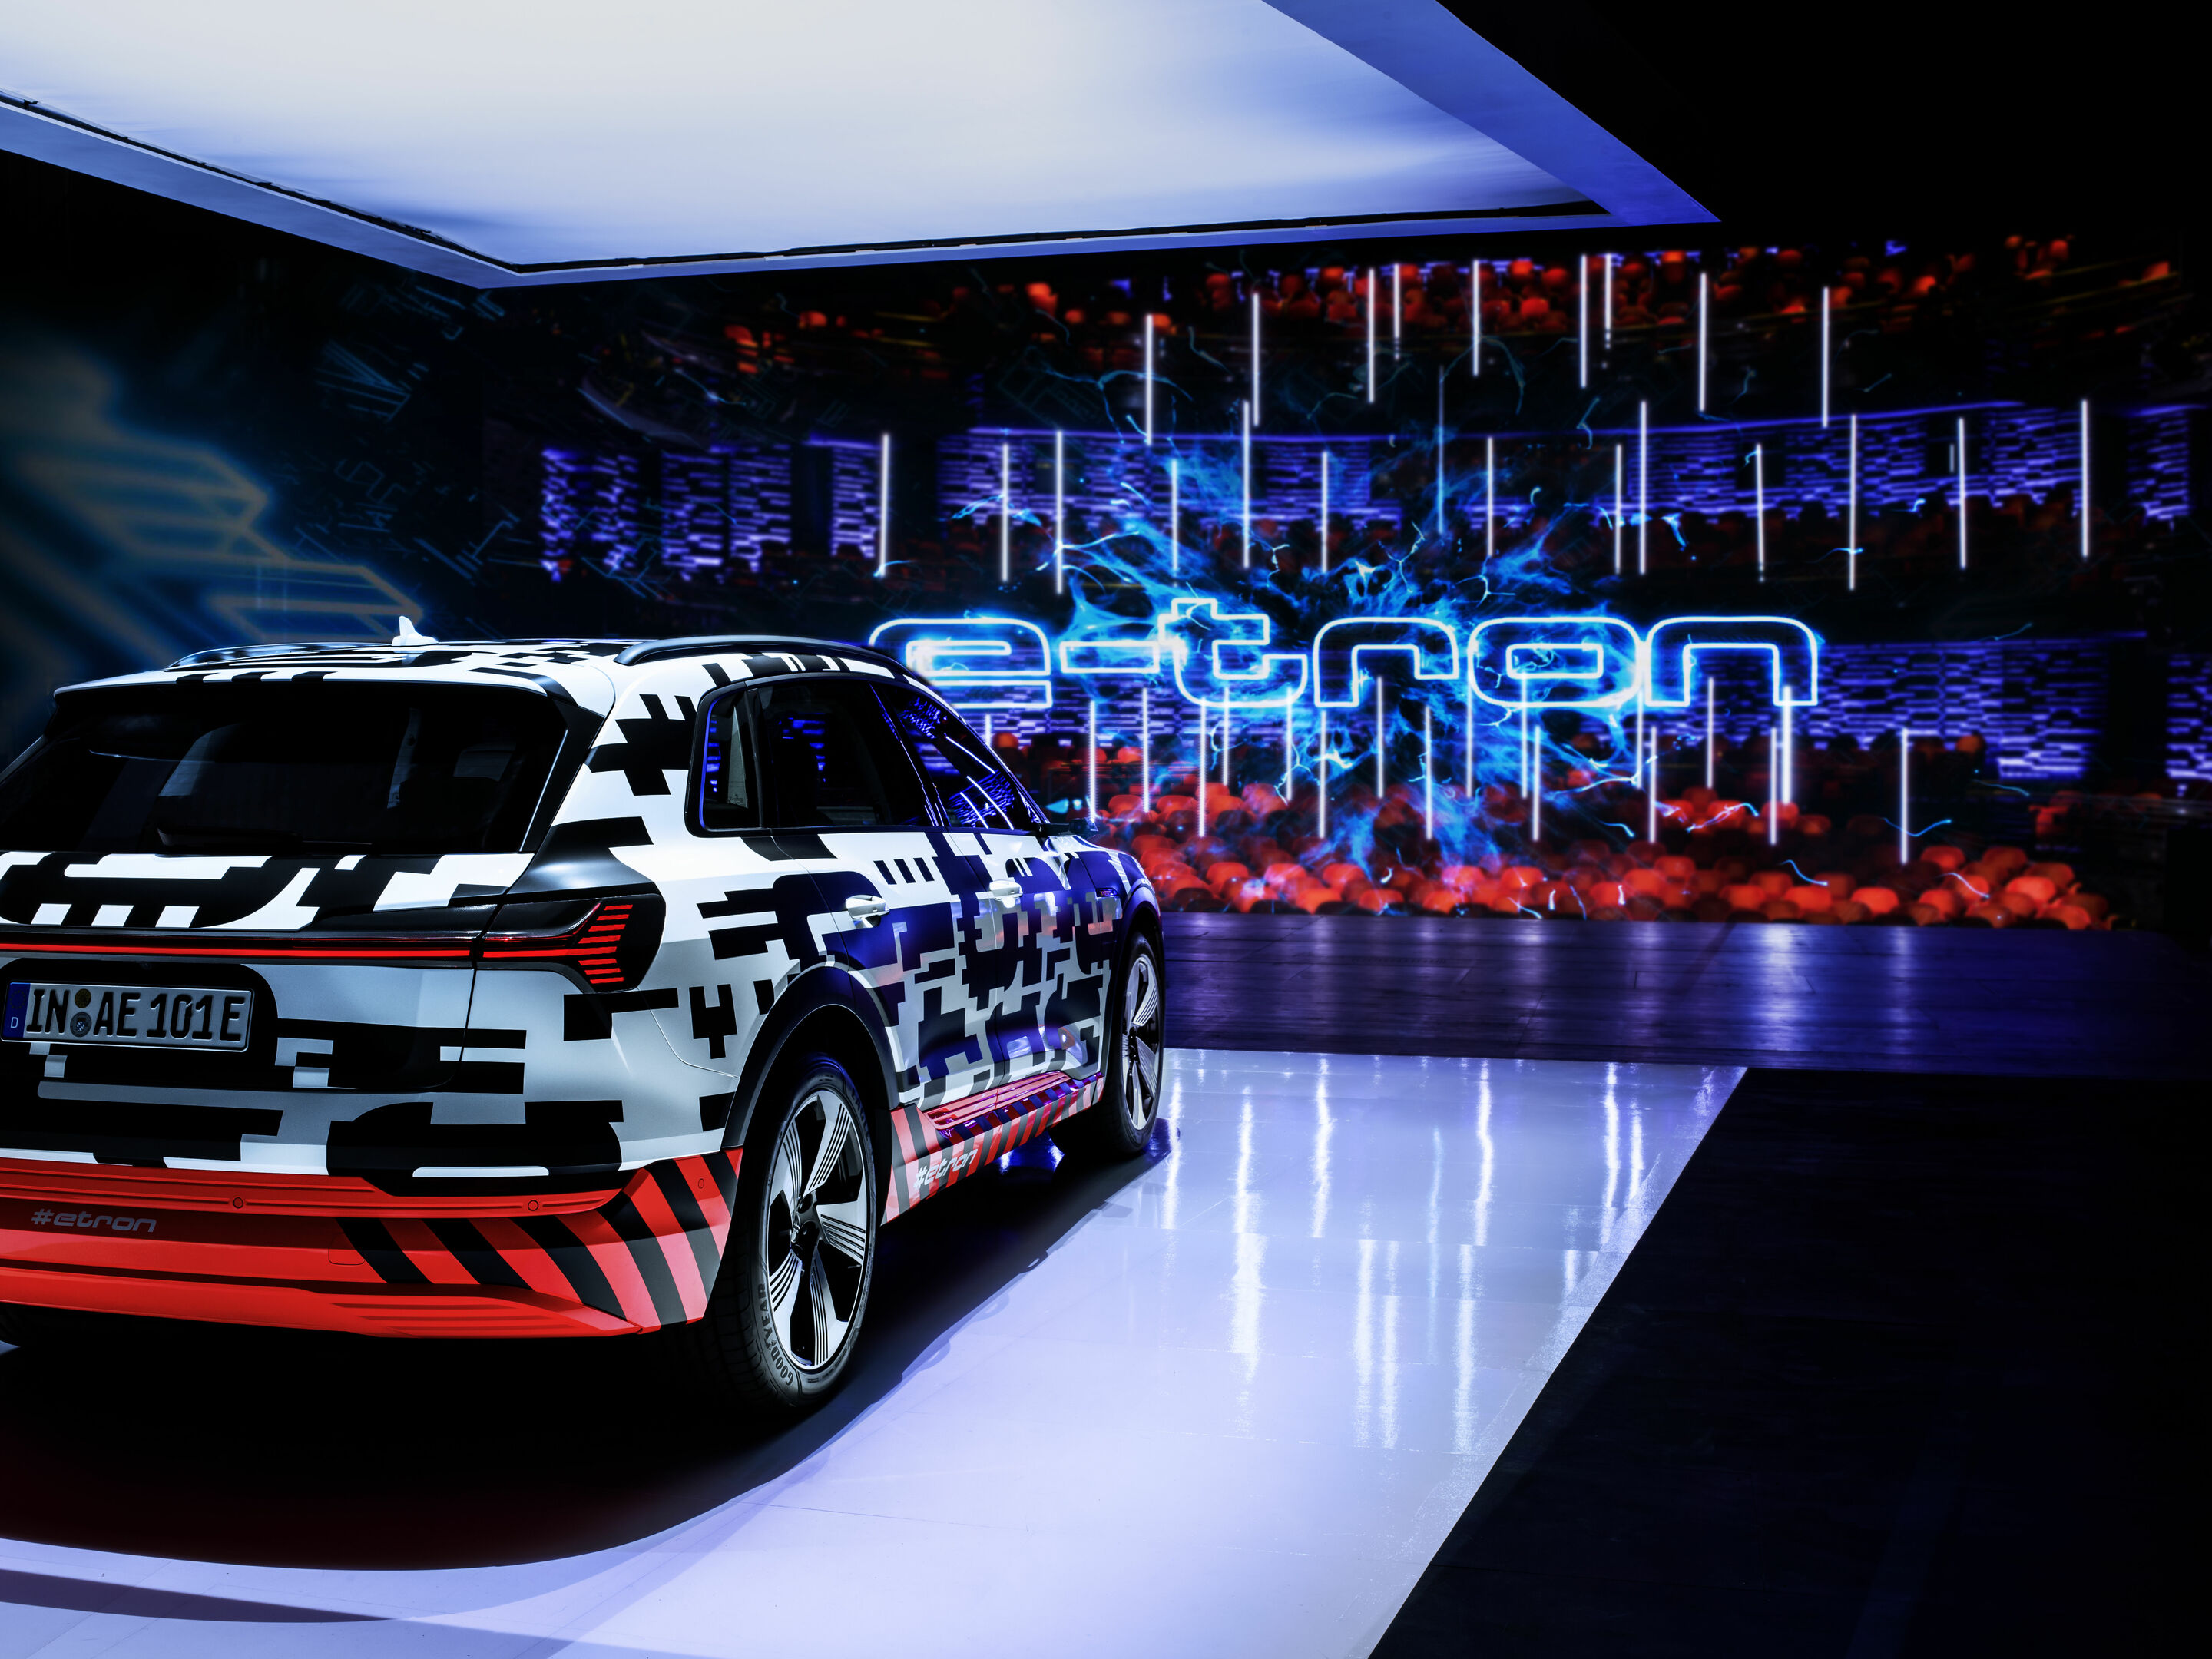 Der Audi e-tron-Prototyp auf der Bühne im Royal Danish Playhouse in Kopenhagn